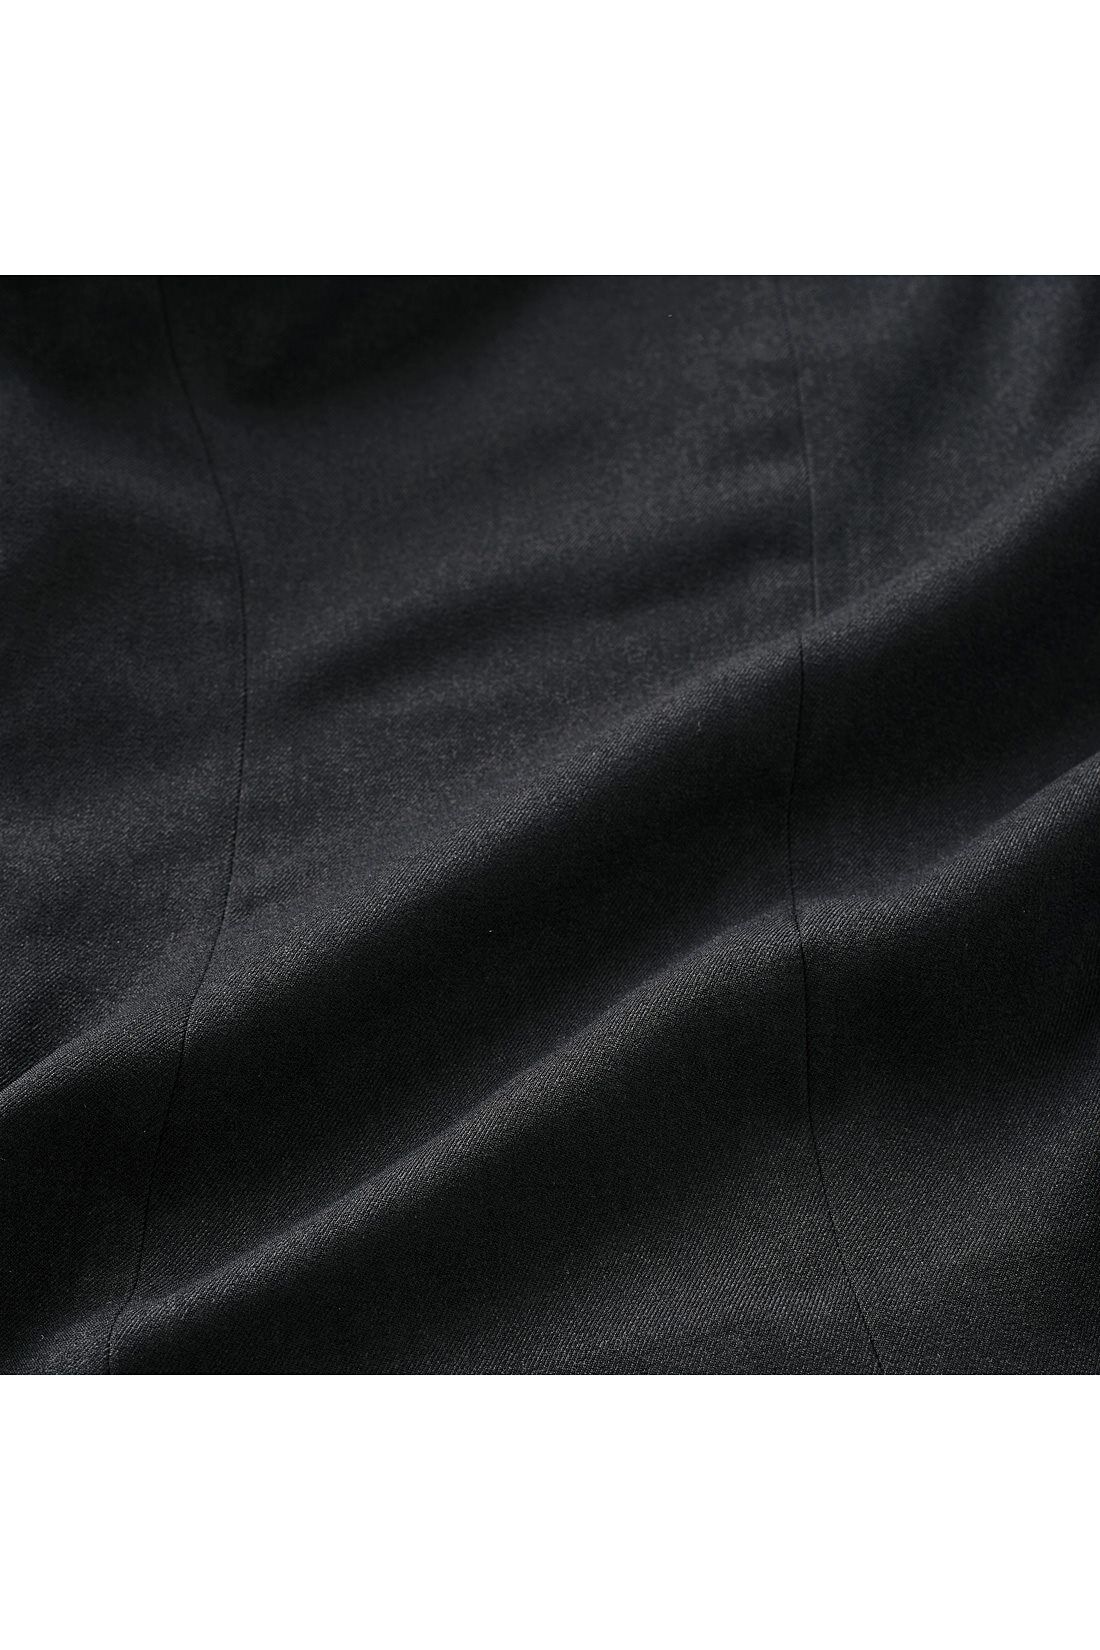 DRECO by IEDIT|DRECOバイヤーズセレクト　ウーリッシュノーカラージャケット〈ブラック〉|ウールのような表面感